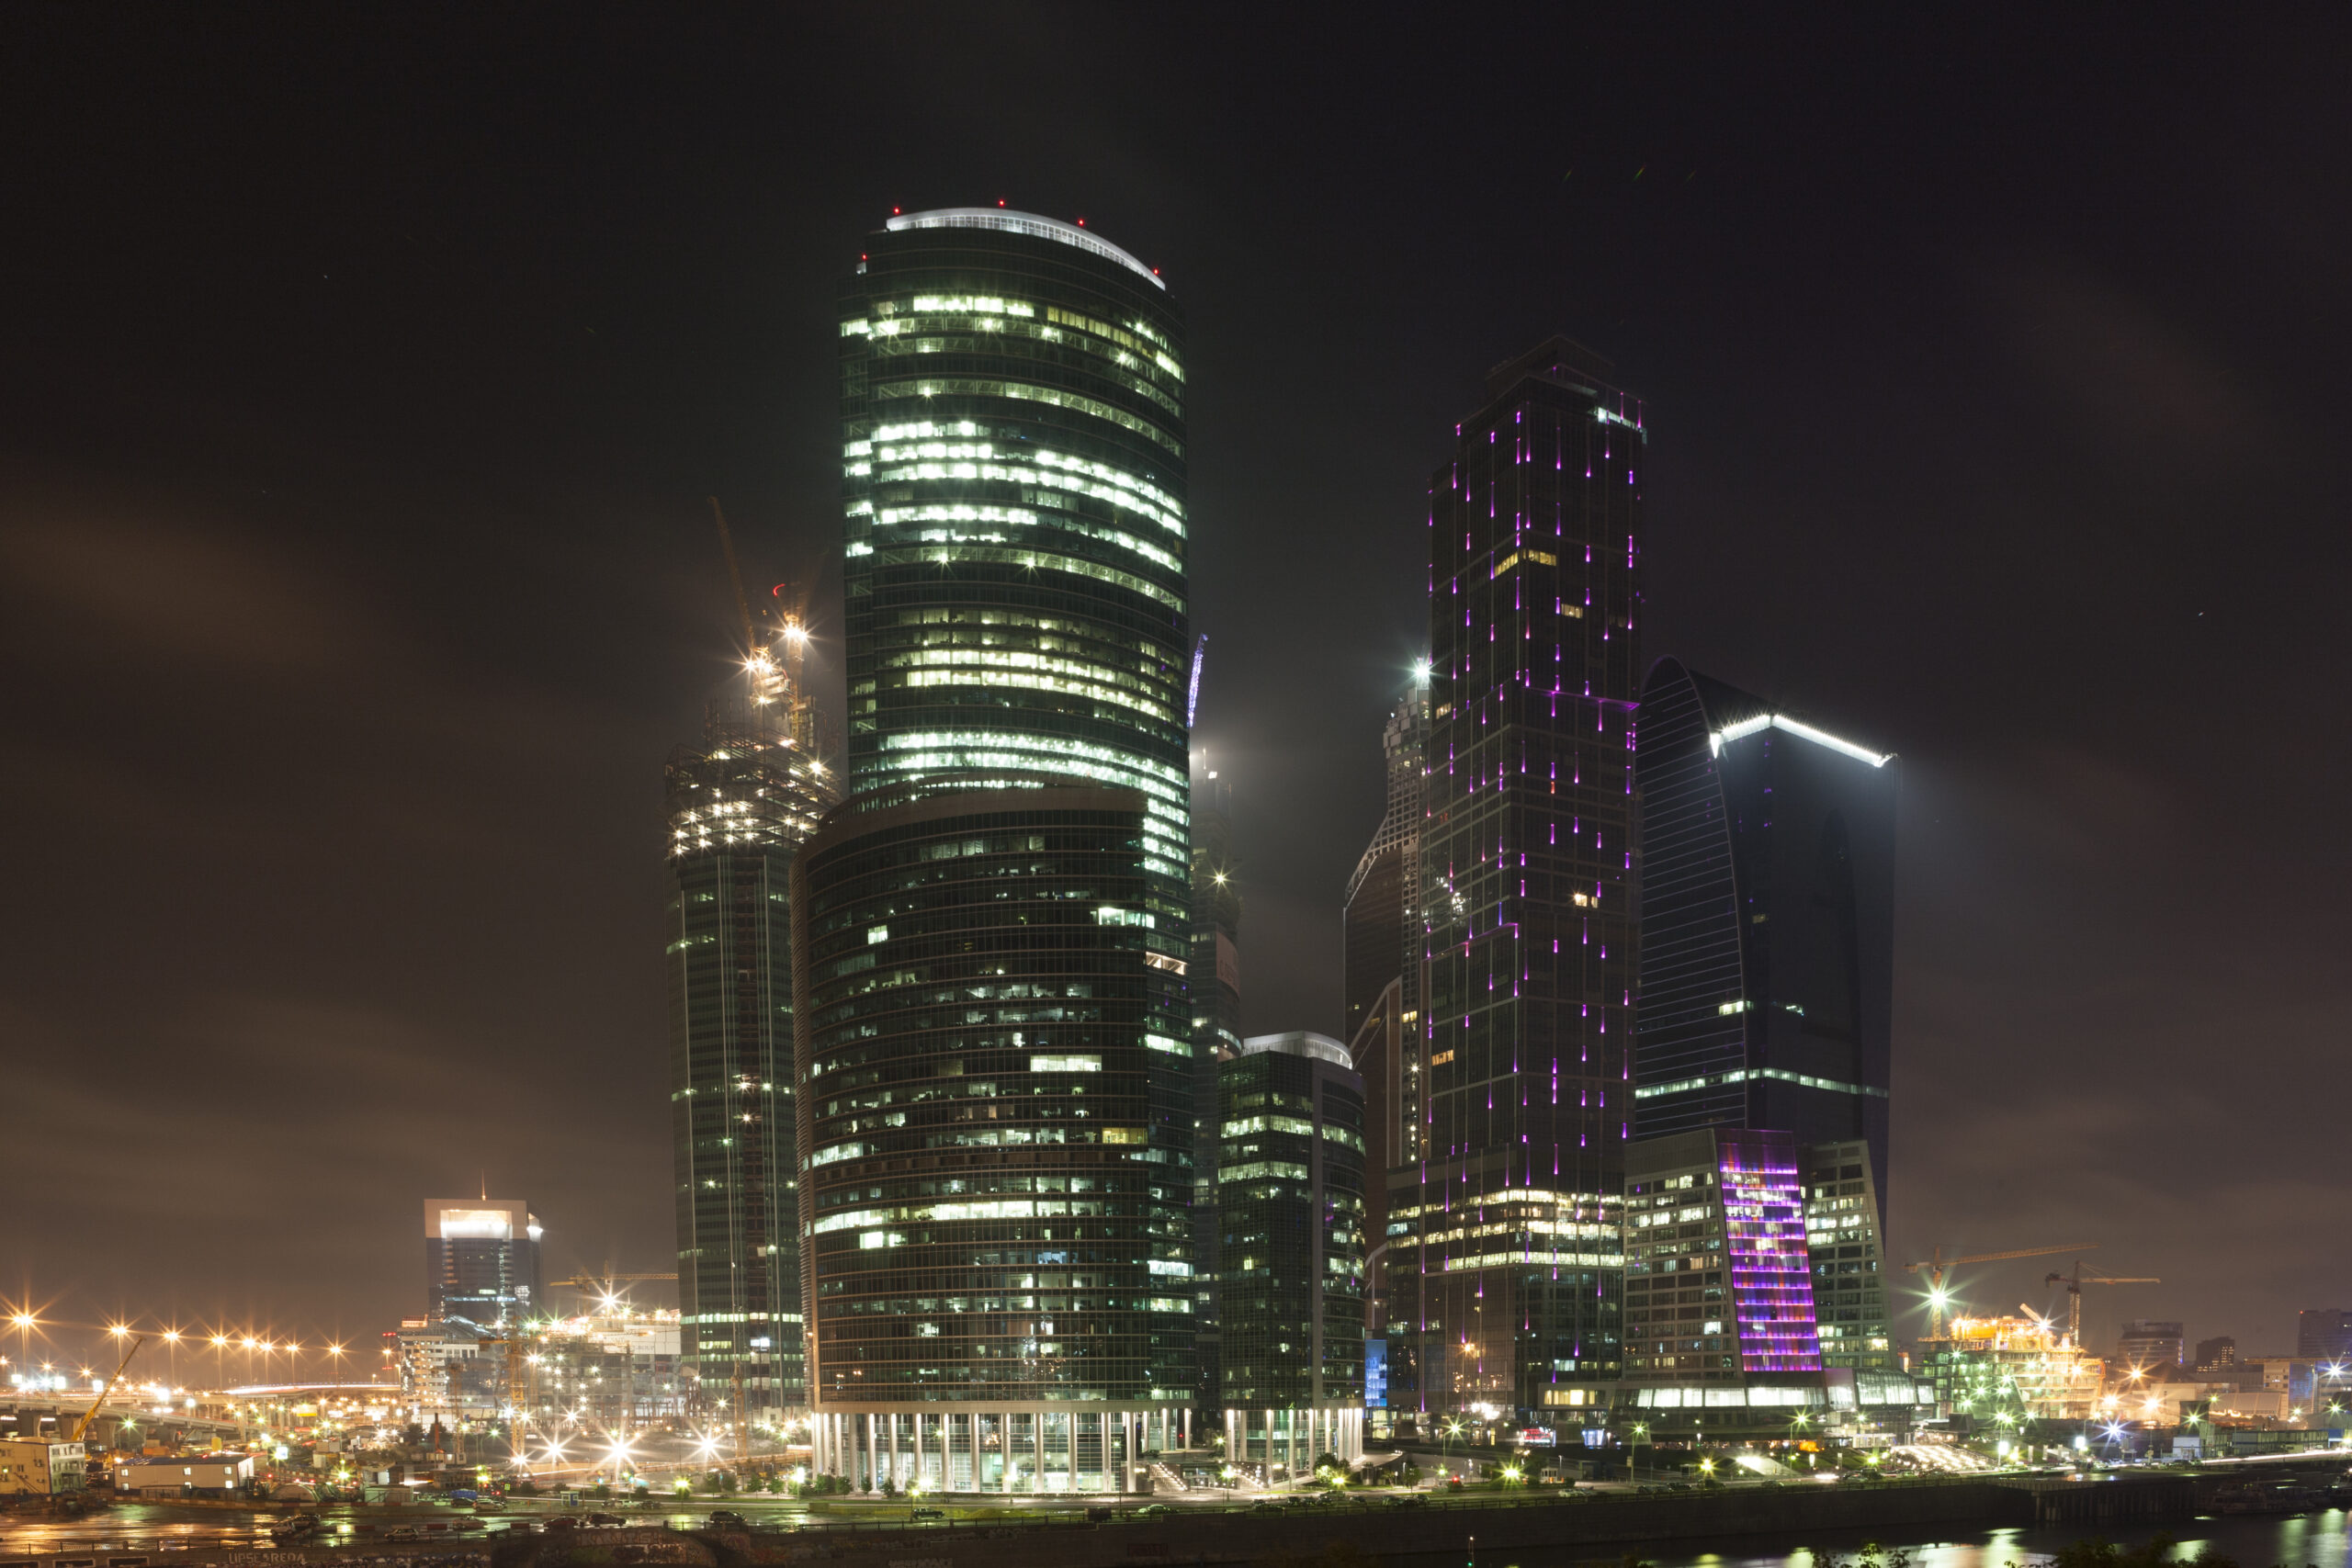 foto notturna della nuova Mosca, New Moscow, con i suoi grattacieli, per il corso di fotografia urbana notturna con cavalletto della scuola di fotografia Parioli Fotografia di Roma